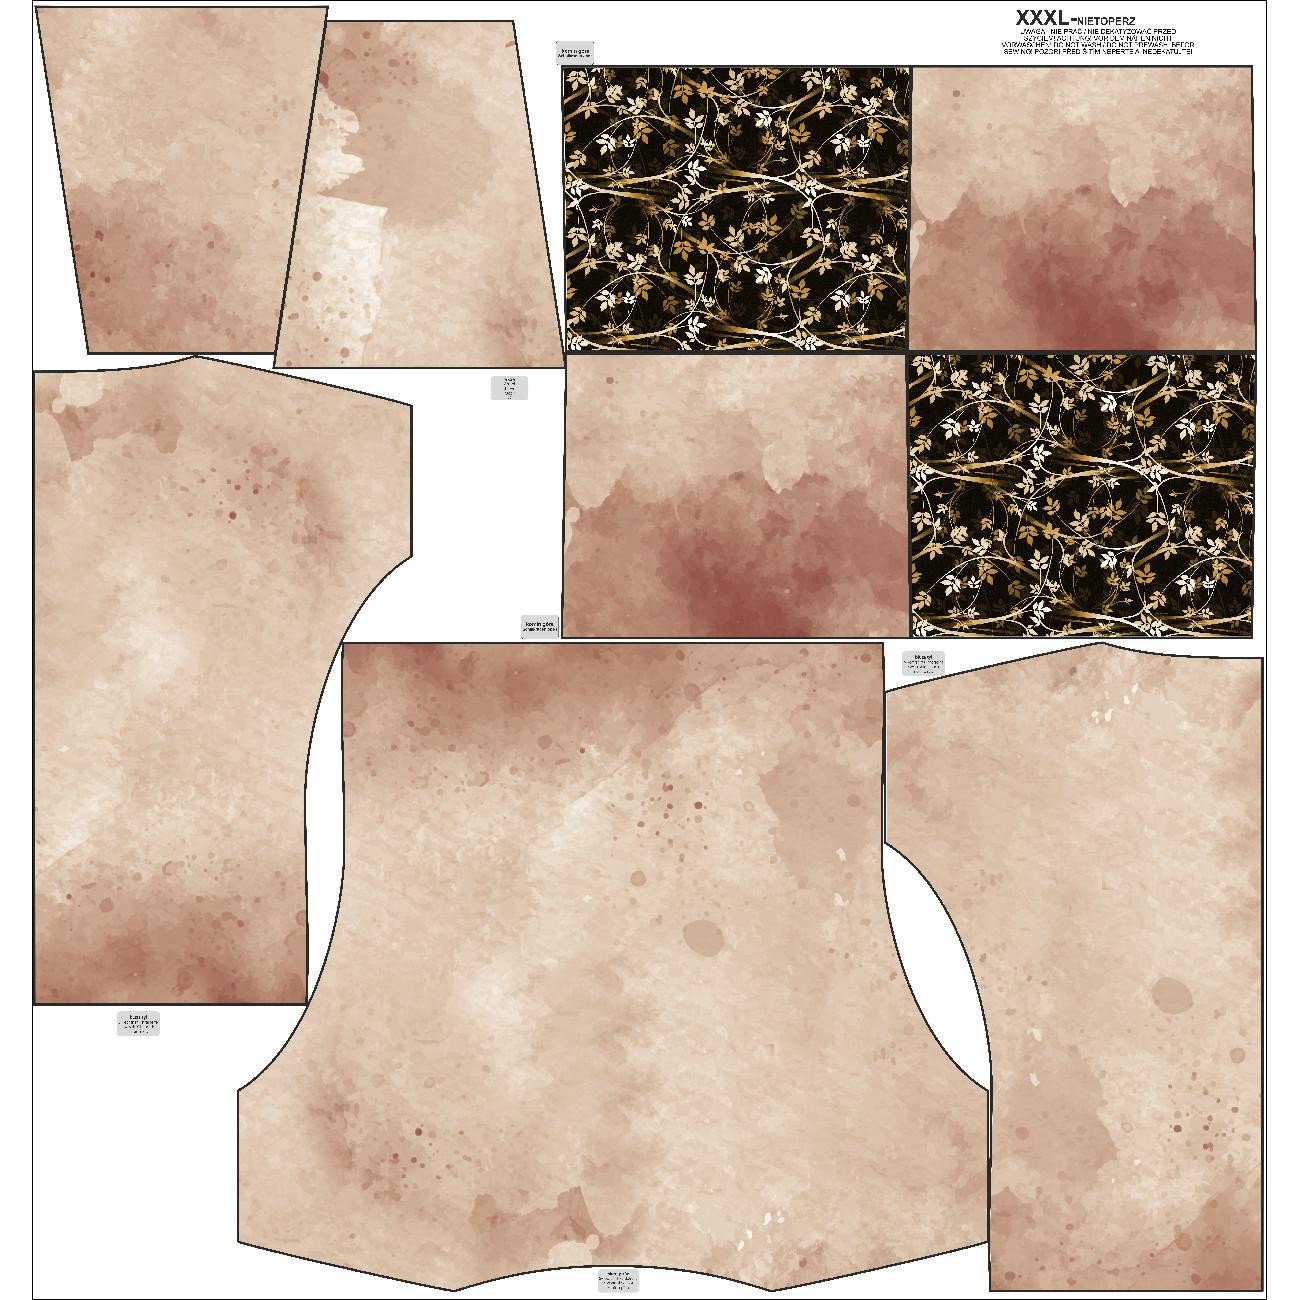 SNOOD SWEATSHIRT (FURIA) - BEIGE SPECKS / leaves pat. 2 (gold) - sewing set